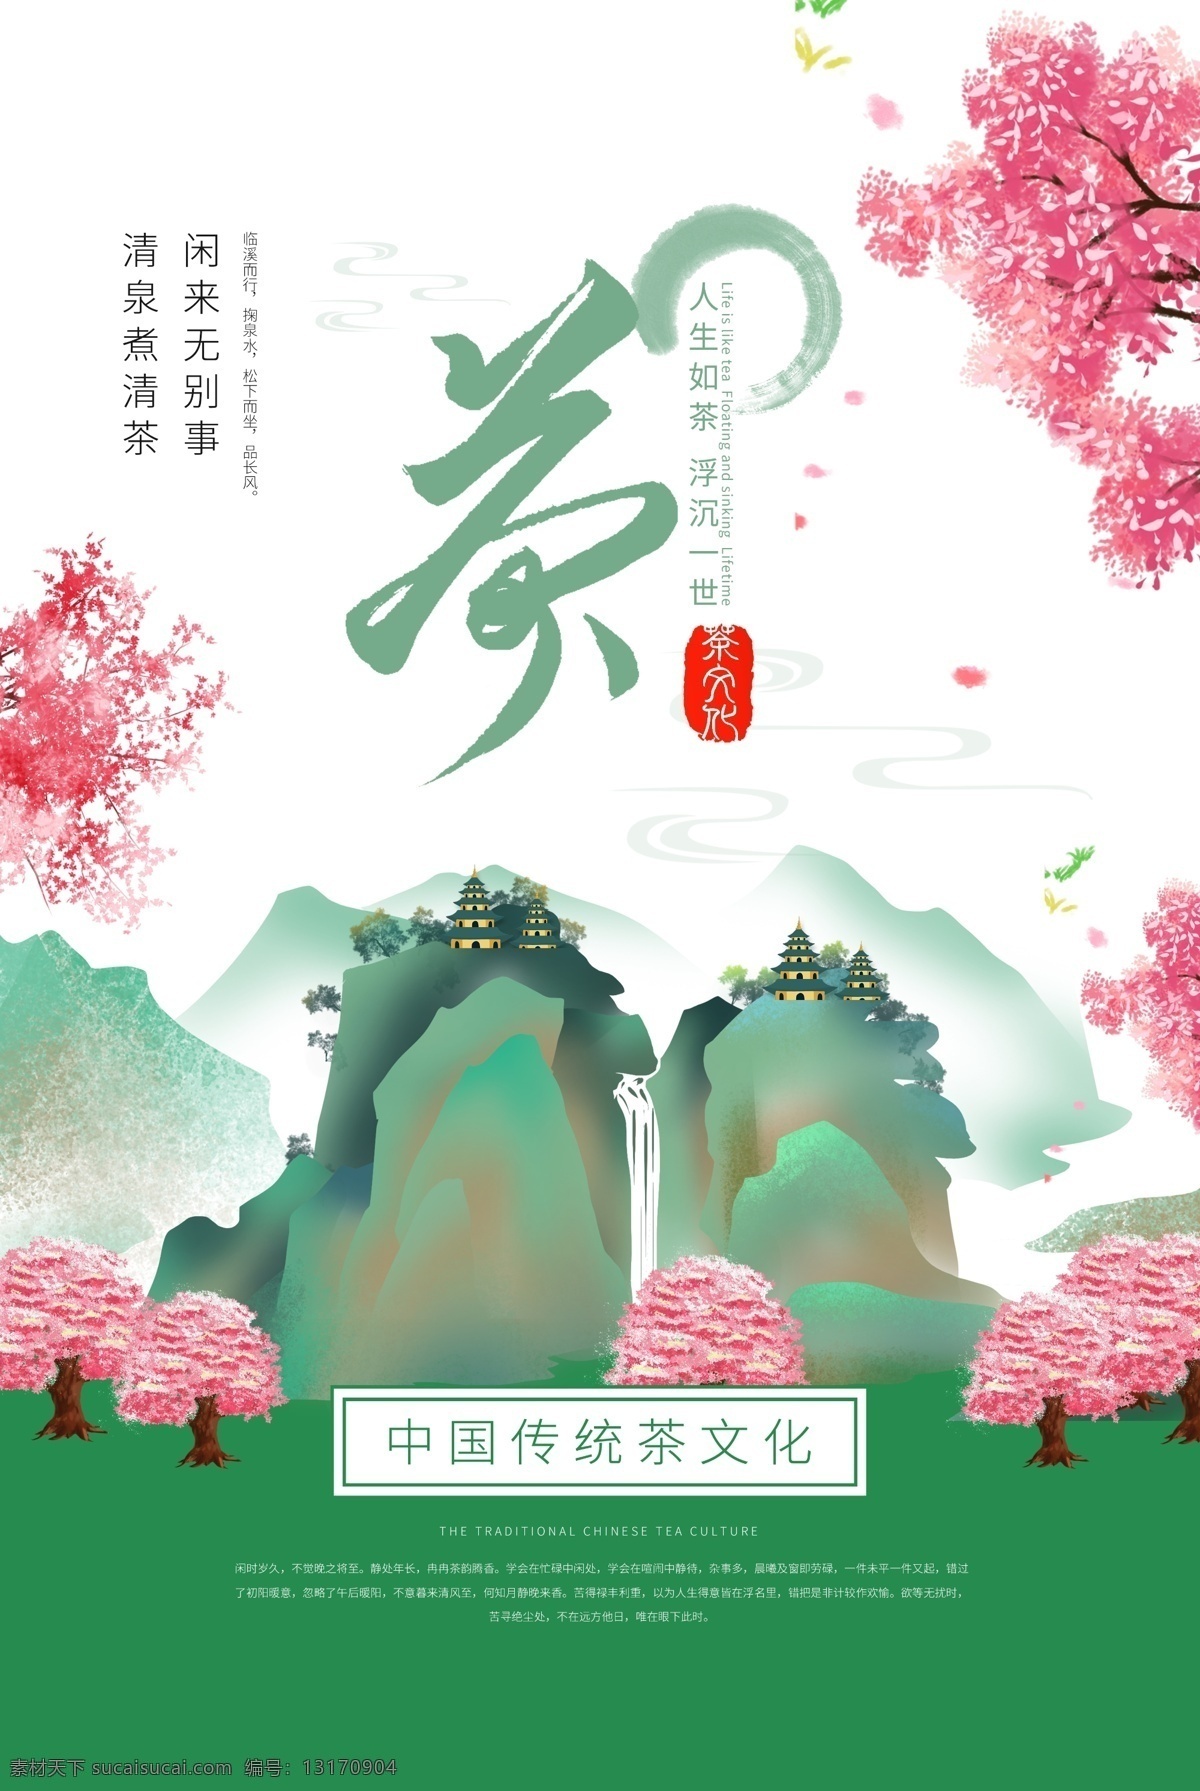 茶文化 传统 活动 海报